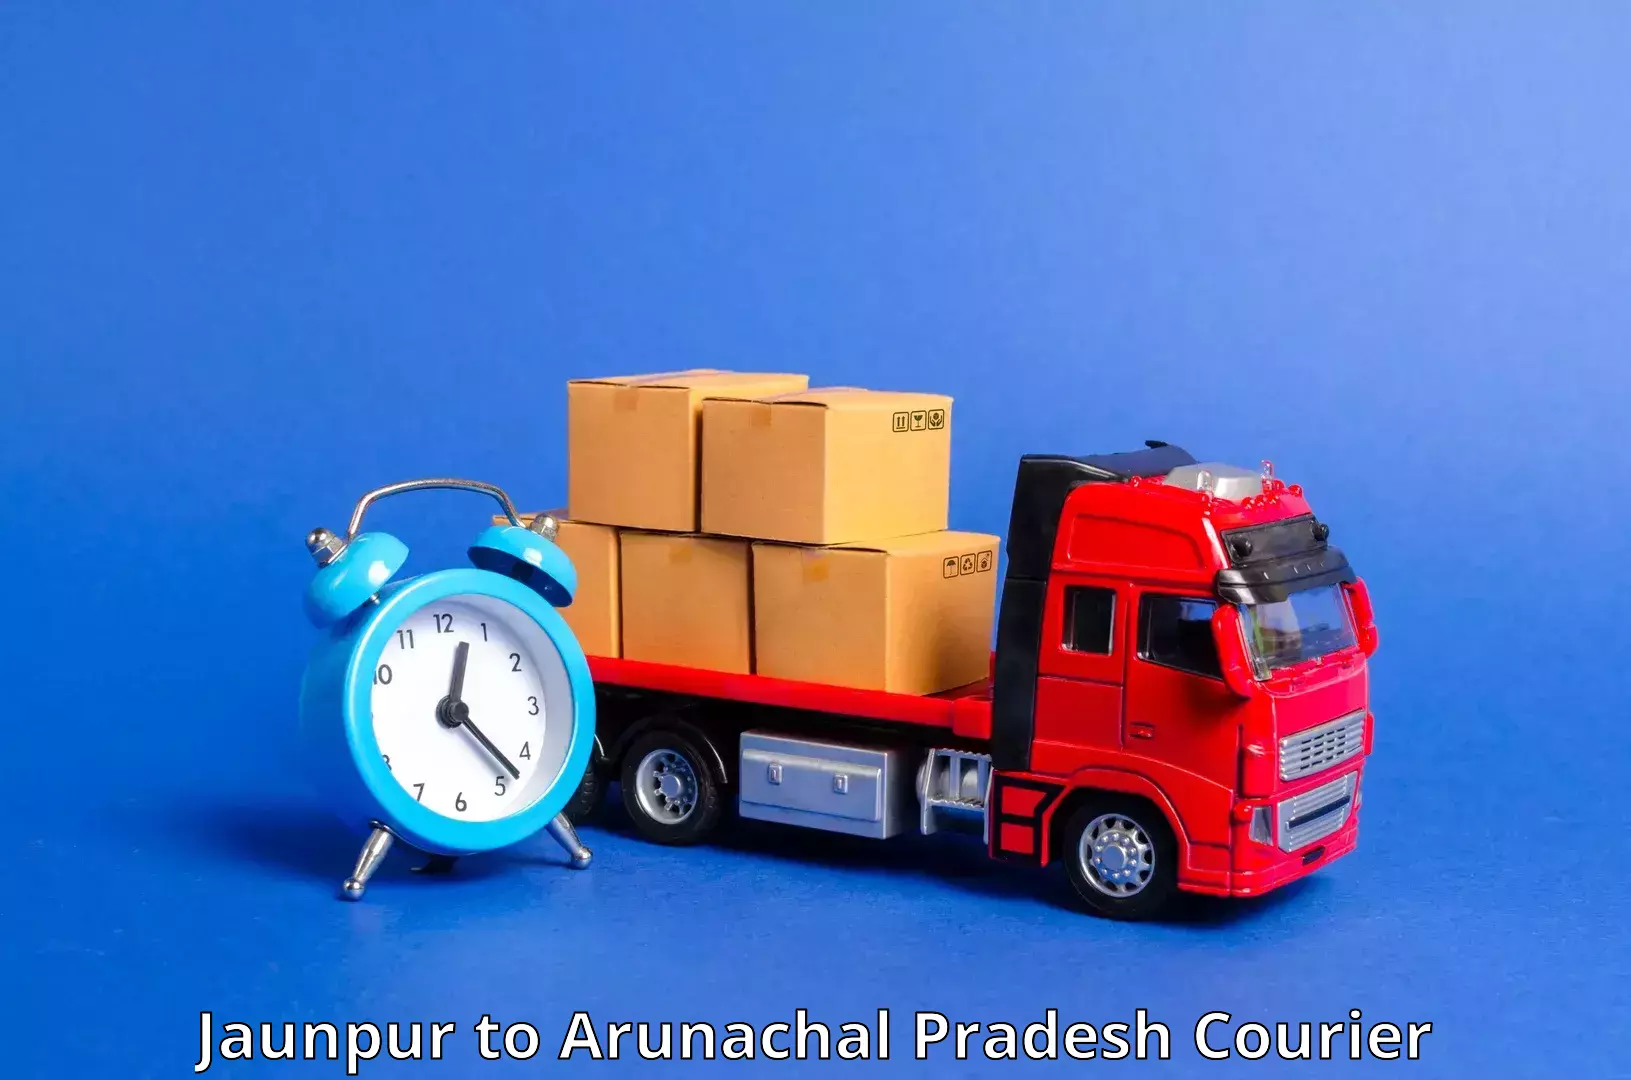 Courier service comparison Jaunpur to Pasighat